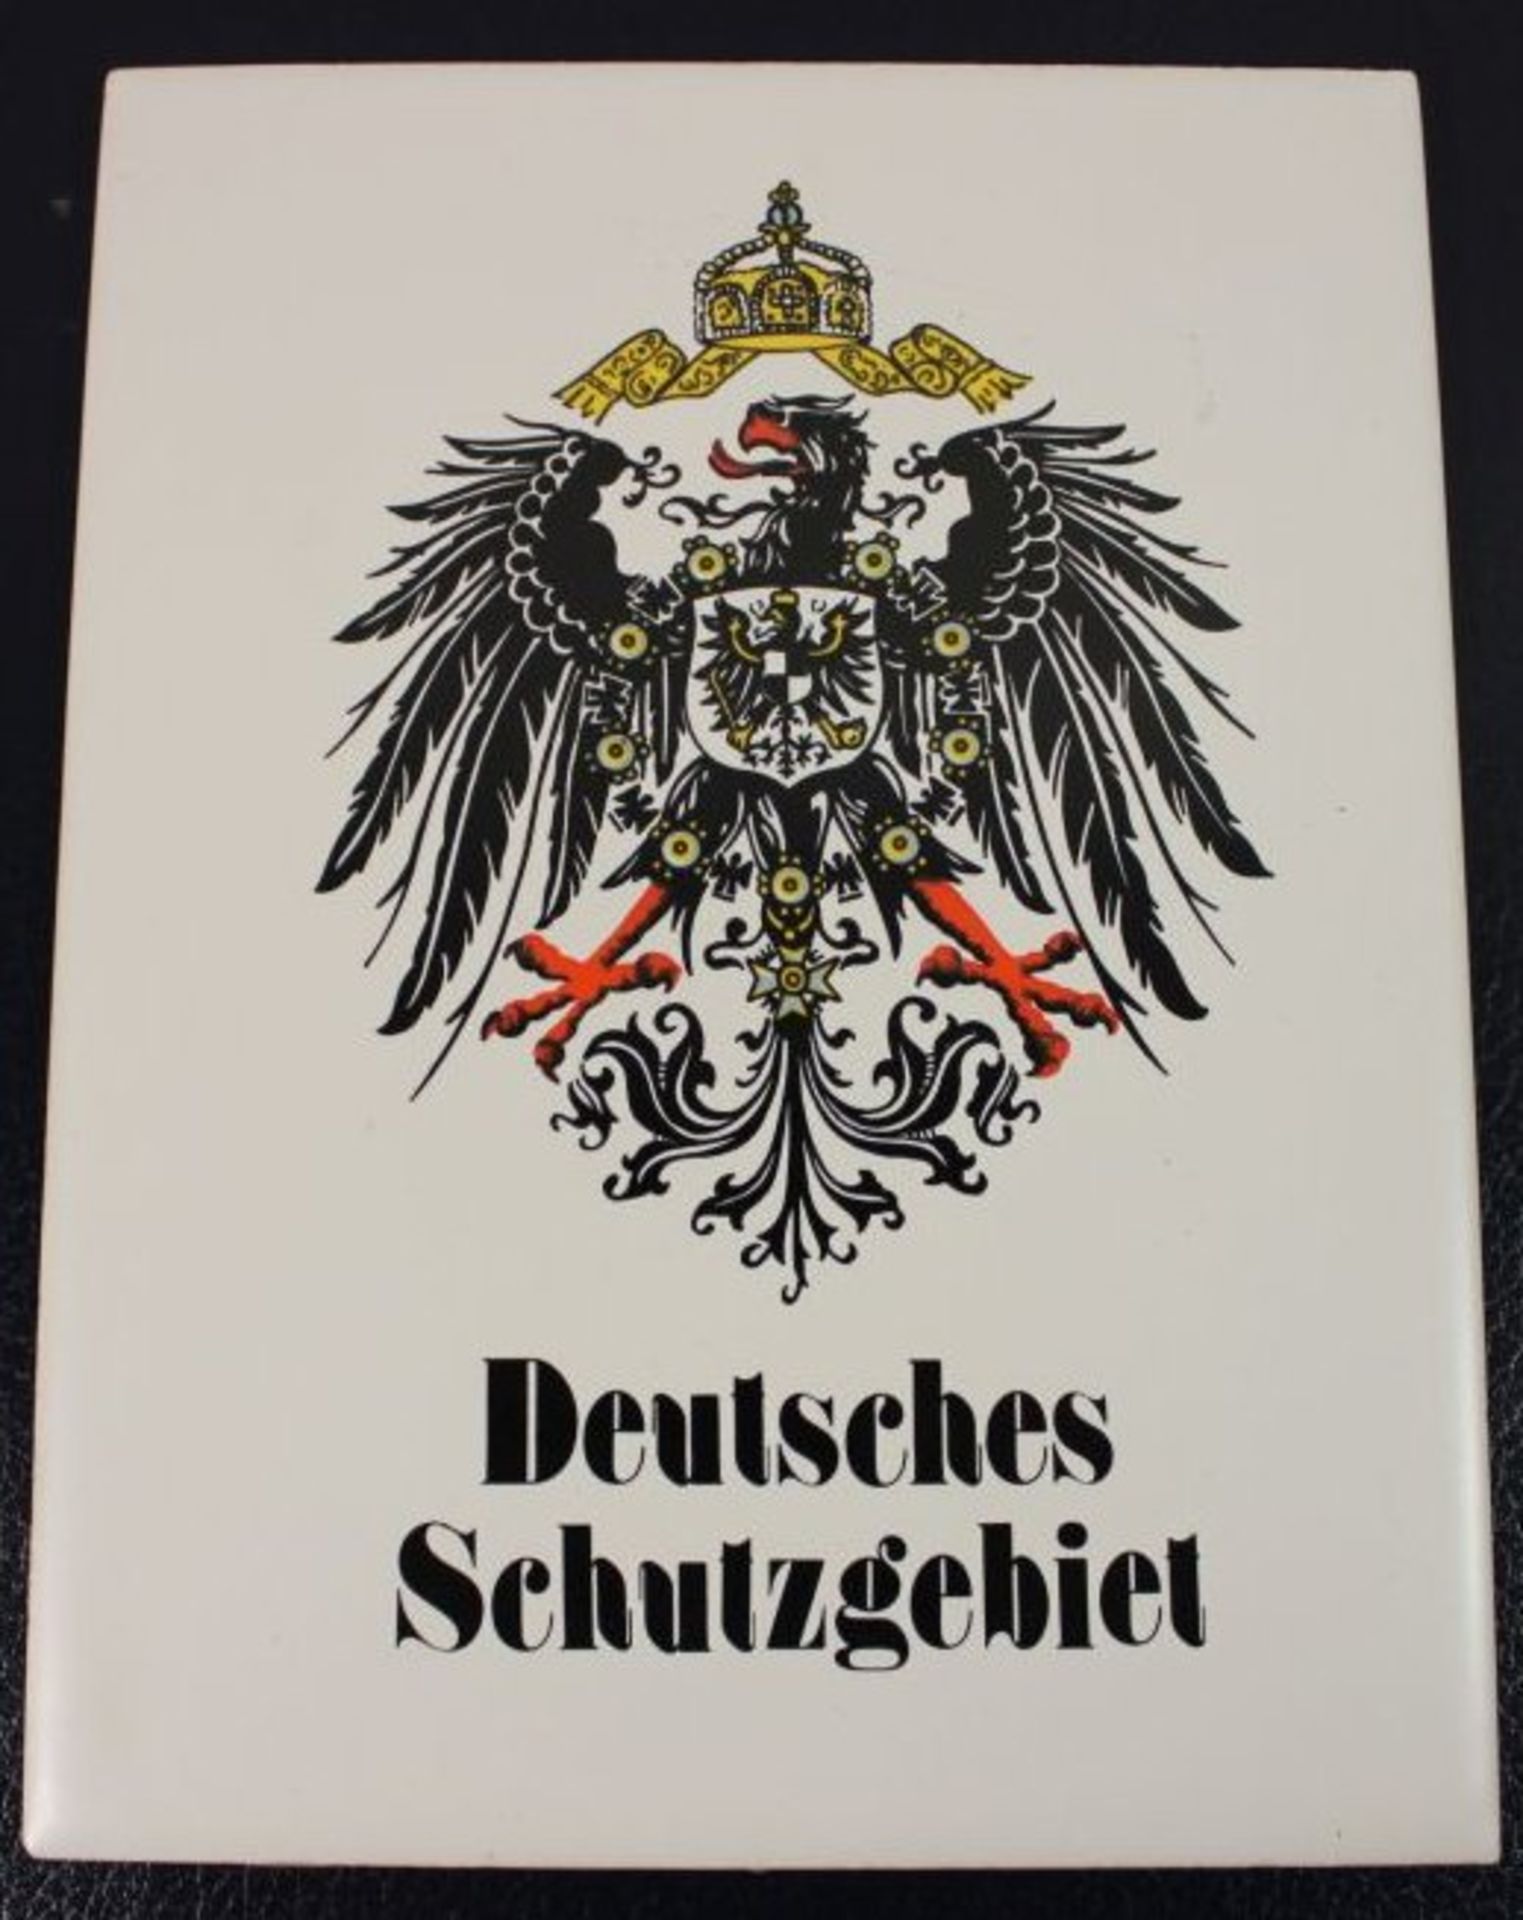 Wandfliese "Deutsches Schutzgebiet", neuzeitl., 20 x 15cm.